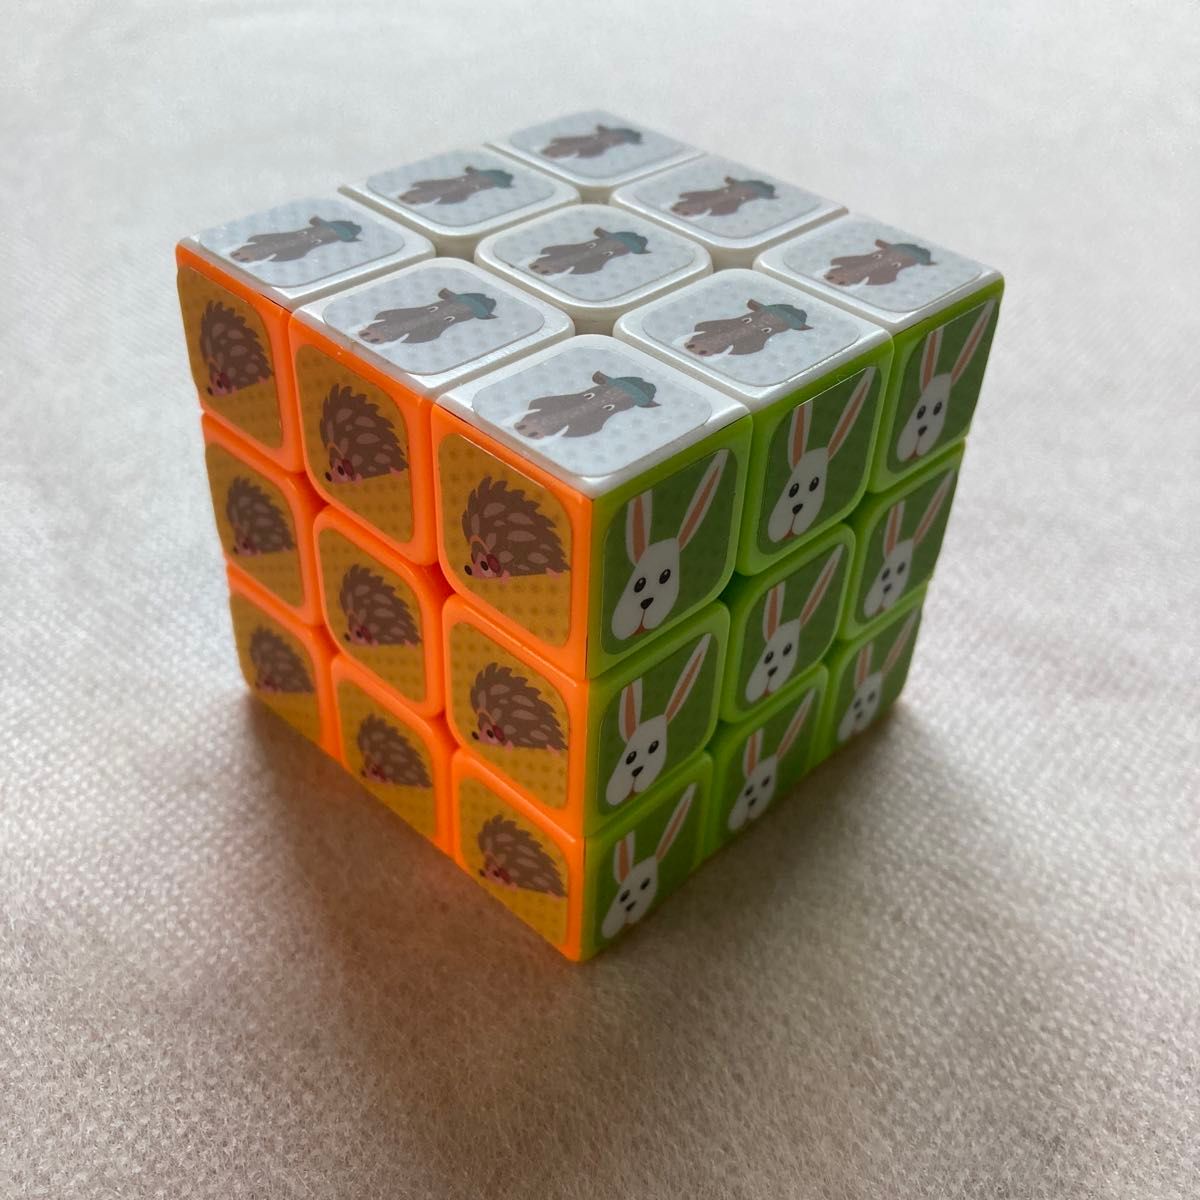 ルービックキューブ 3×3 頭脳ゲーム 脳トレ 知育玩具 認知症予防 軽量 コンパクト 子供 可愛い 動物柄 パズル ゲーム